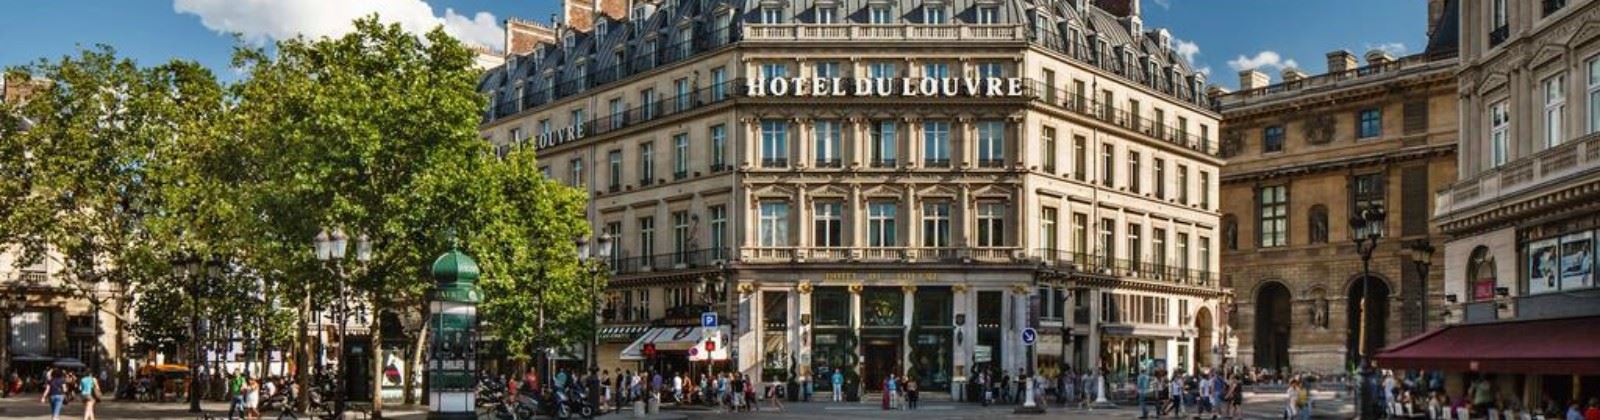 OLEVENE Image - hotel-du-louvre-olevene-restaurant-seminaire-conference-